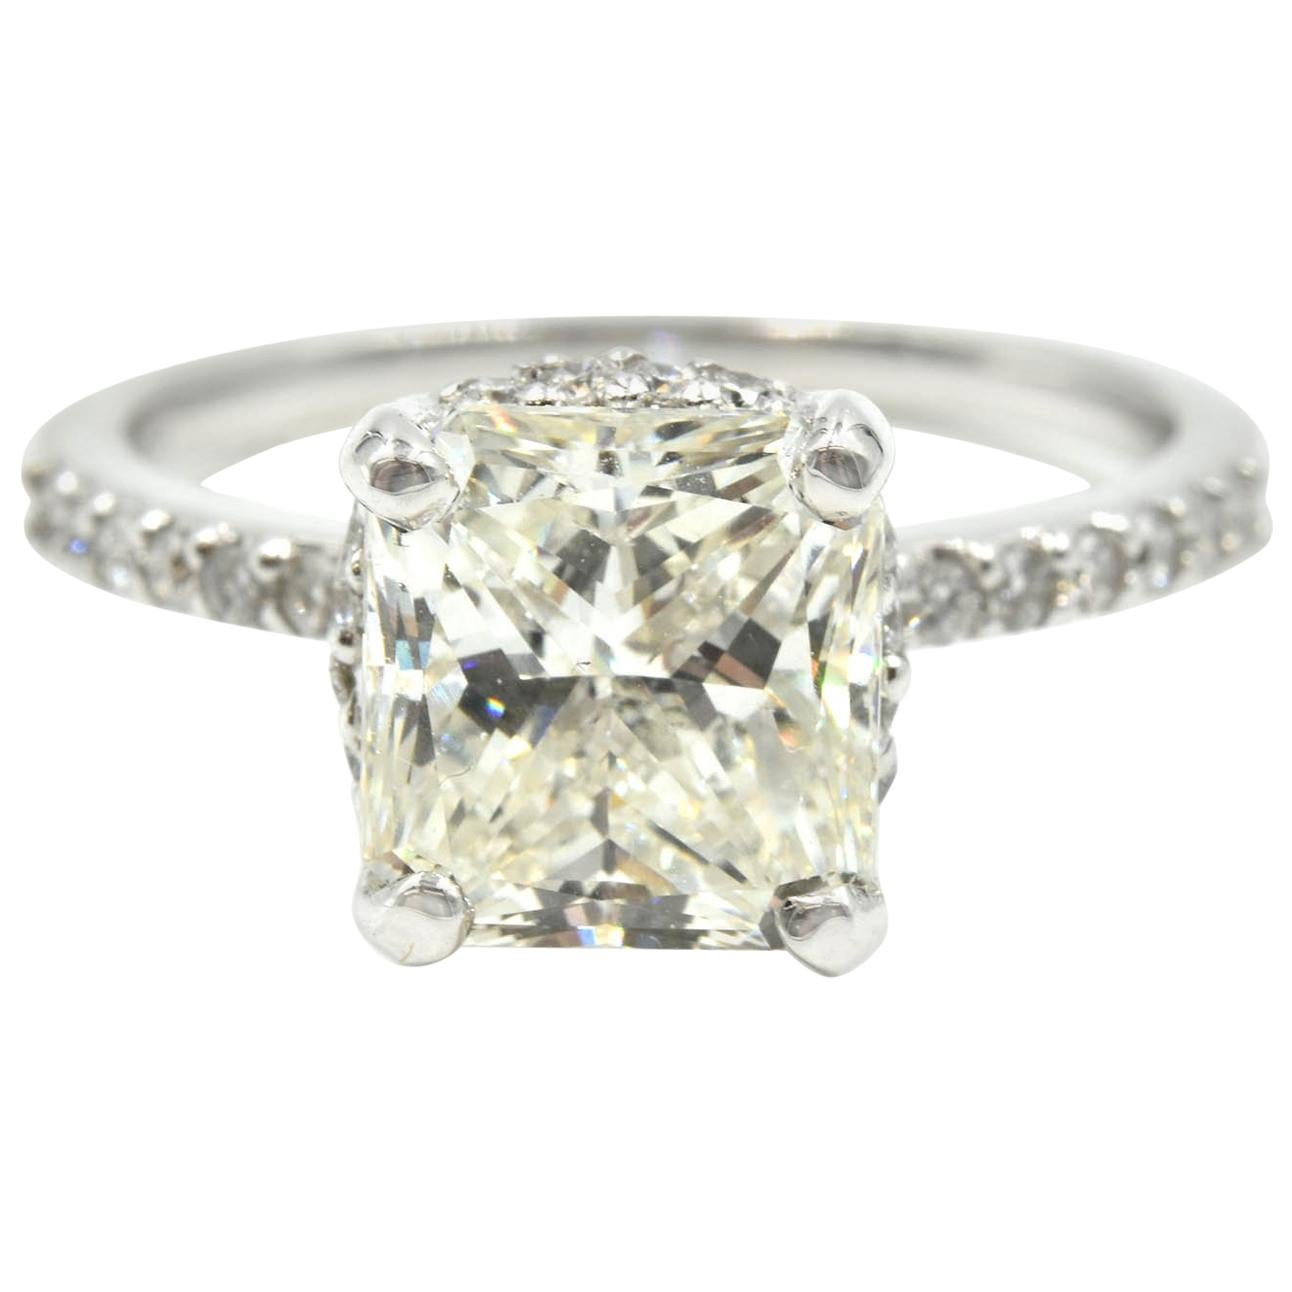 3.00 Carat Radiant Cut GIA Certified Diamond Engagement Ring 14 Karat White Gold